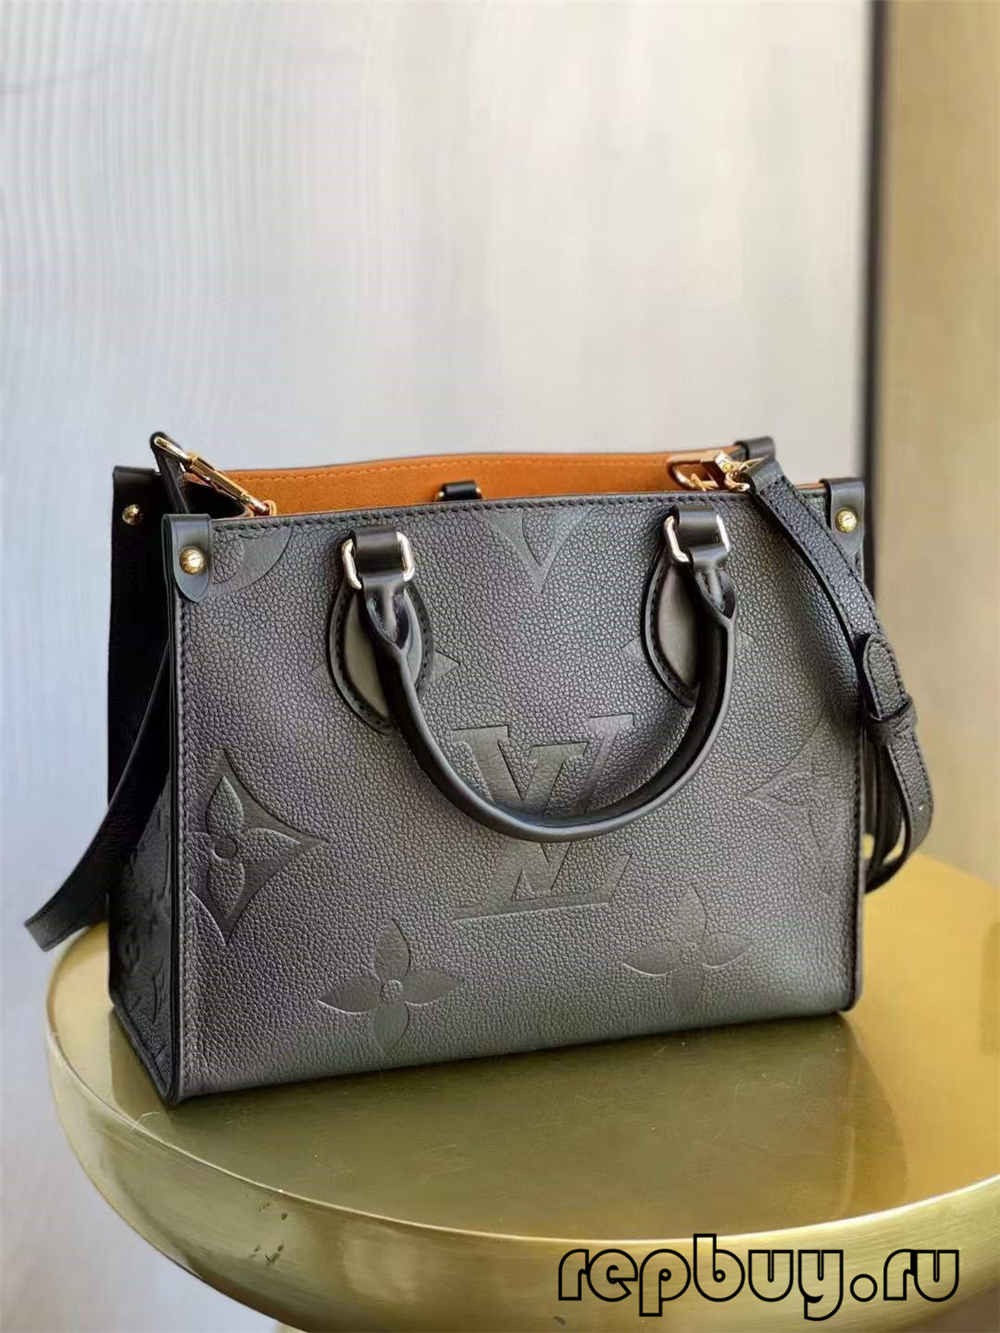 लुई व्हिटॉन ओन्थेगो एम४५६५३ सर्वोत्तम दर्जाची प्रतिकृती बॅग (२०२२ अद्यतनित)-Best Quality Fake Louis Vuitton Bag Online Store, Replica designer bag ru